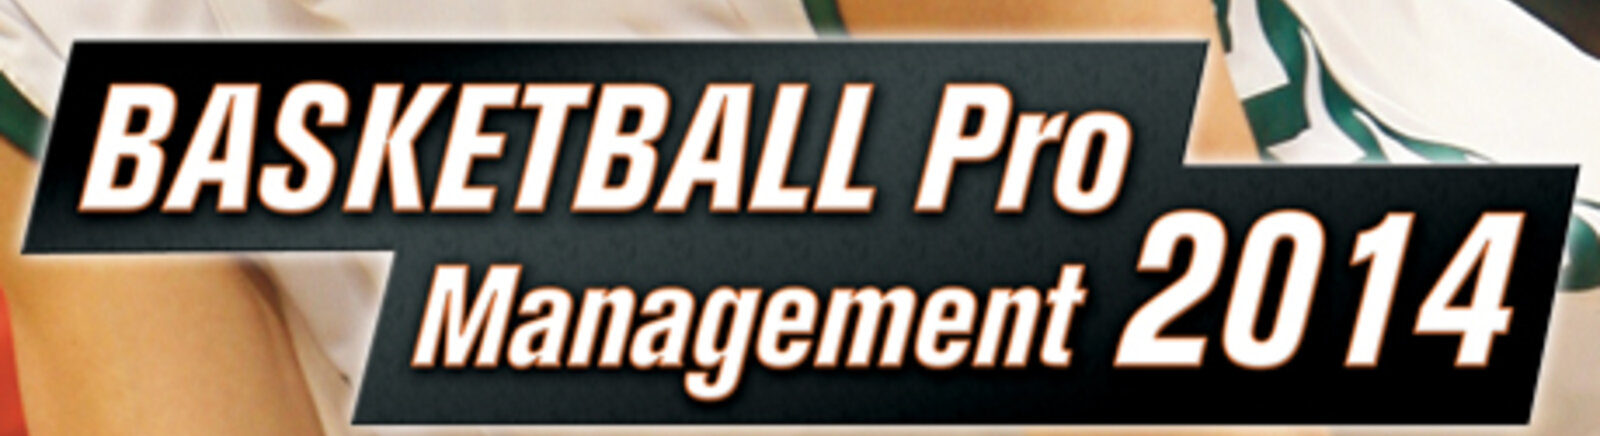 Дата выхода Basketball Pro Management 2014  на PC в России и во всем мире